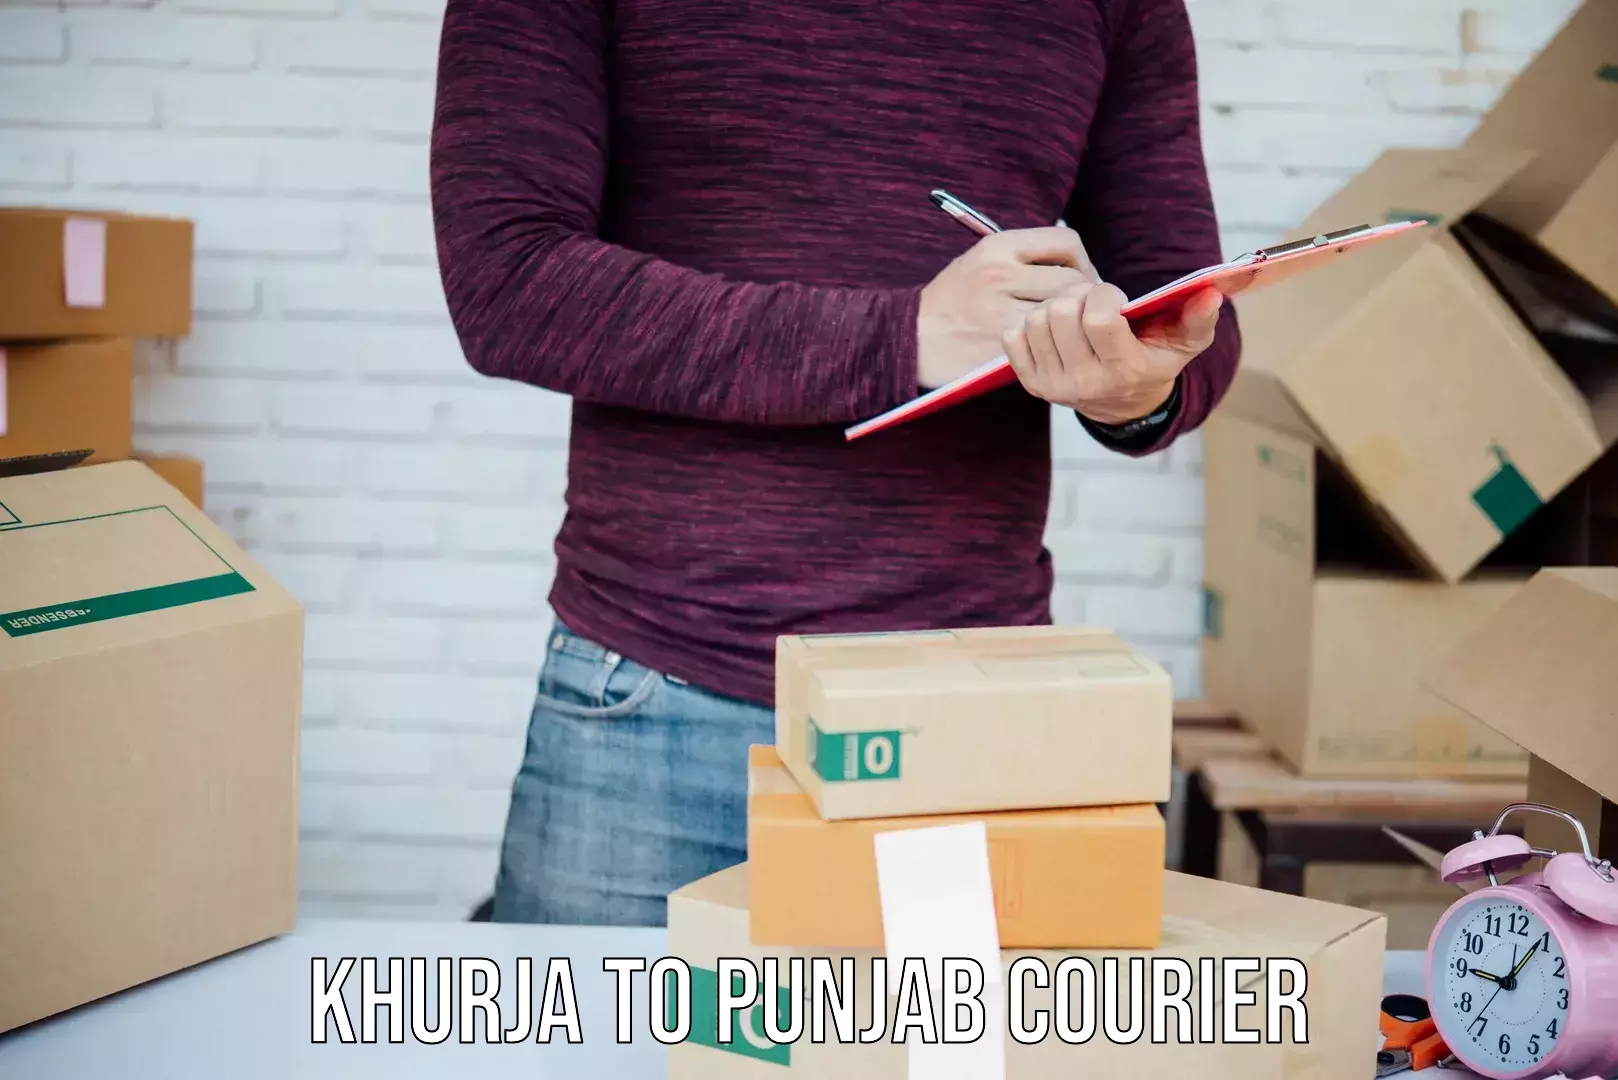 Nationwide shipping coverage Khurja to Punjab